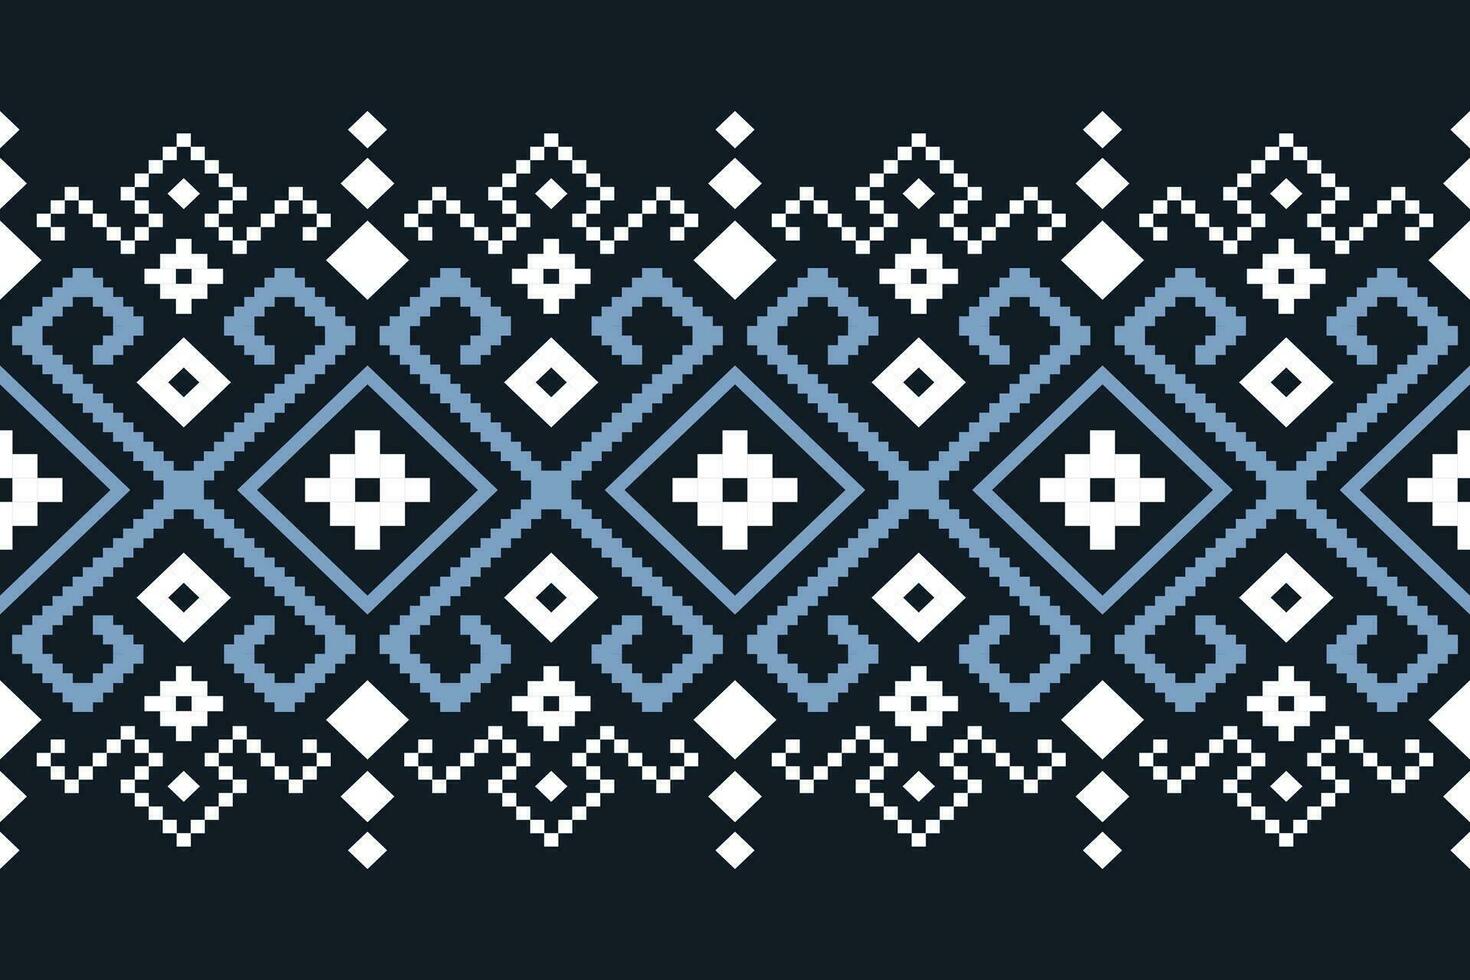 Indigo Marine Blau geometrisch traditionell ethnisch Muster Ikat nahtlos Muster Rand abstrakt Design zum Stoff drucken Stoff Kleid Teppich Vorhänge und Sarong aztekisch afrikanisch indisch indonesisch vektor